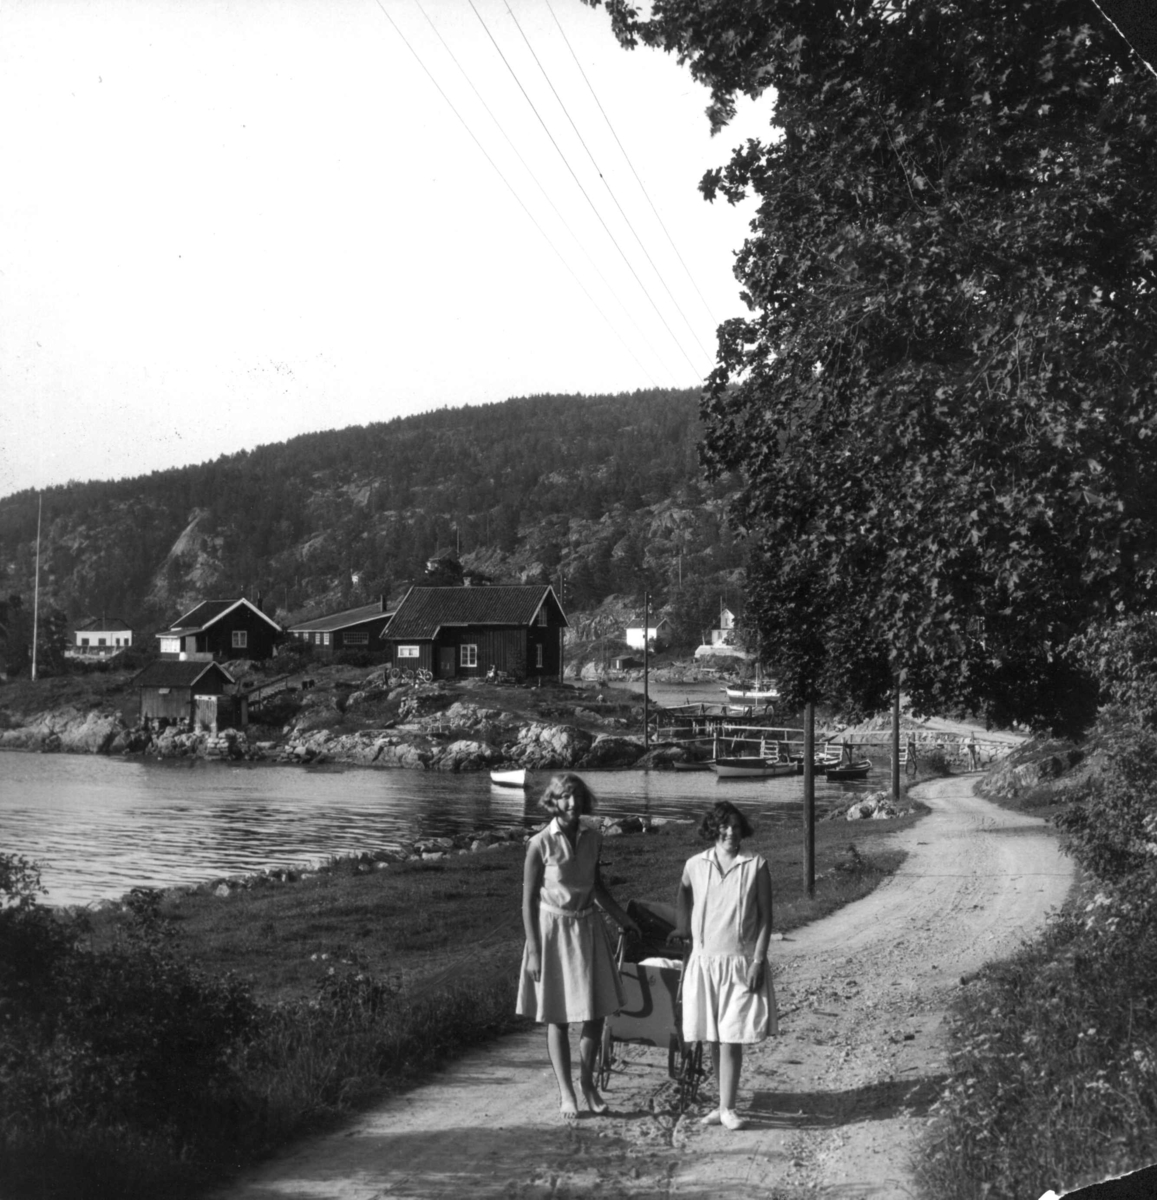 Drøbak, Akershus 1929. To unge kvinner i sommerkjoler med barnevogn står på en vei som går langs sjøen. Bebyggelse og båter ses i bakgrunnen.